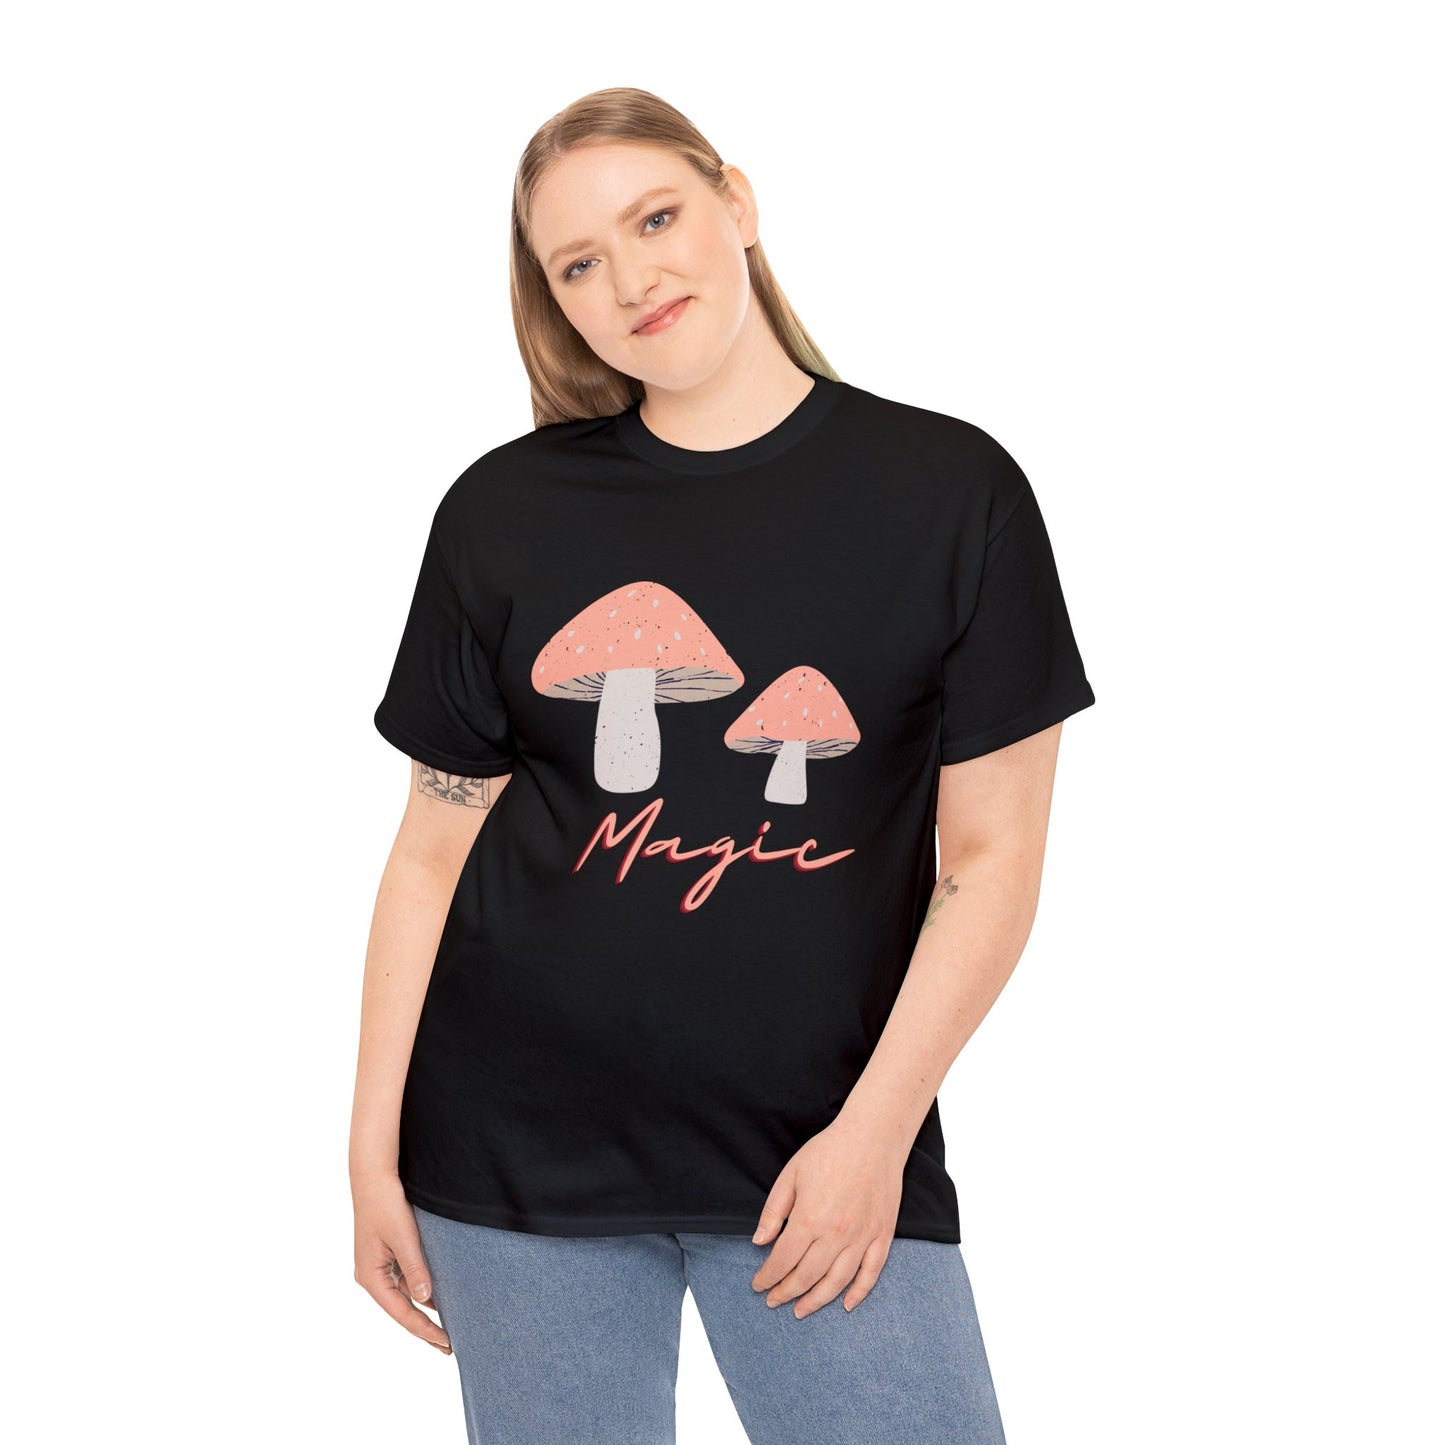 Magical Mushrooms Tshirt by Queen Midas